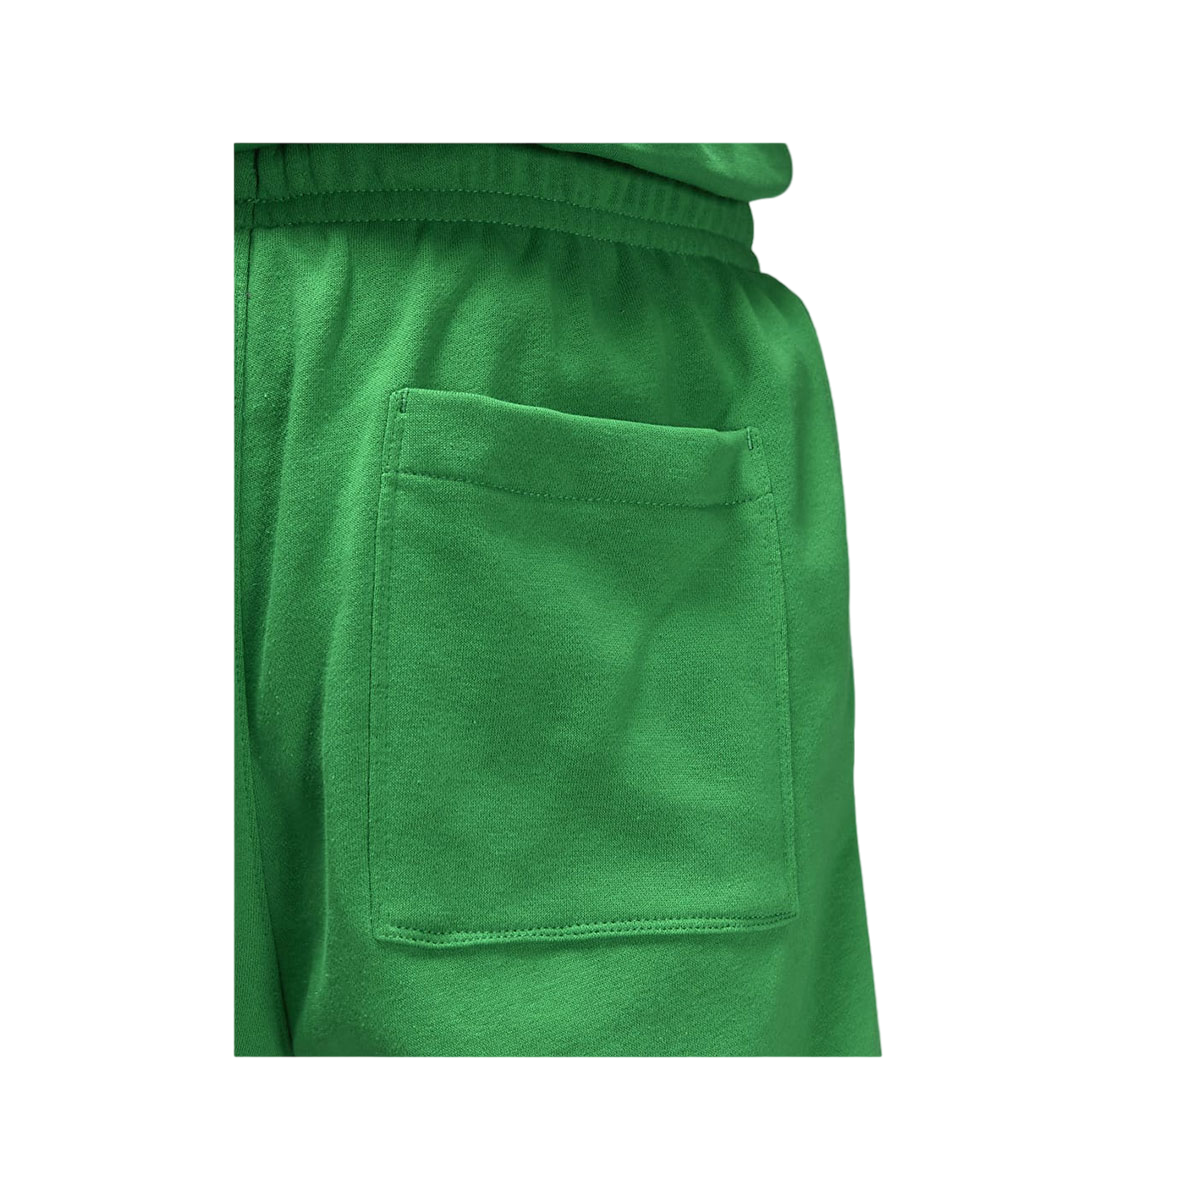 Air Jordan Men's Essential Shorts Lucky Green